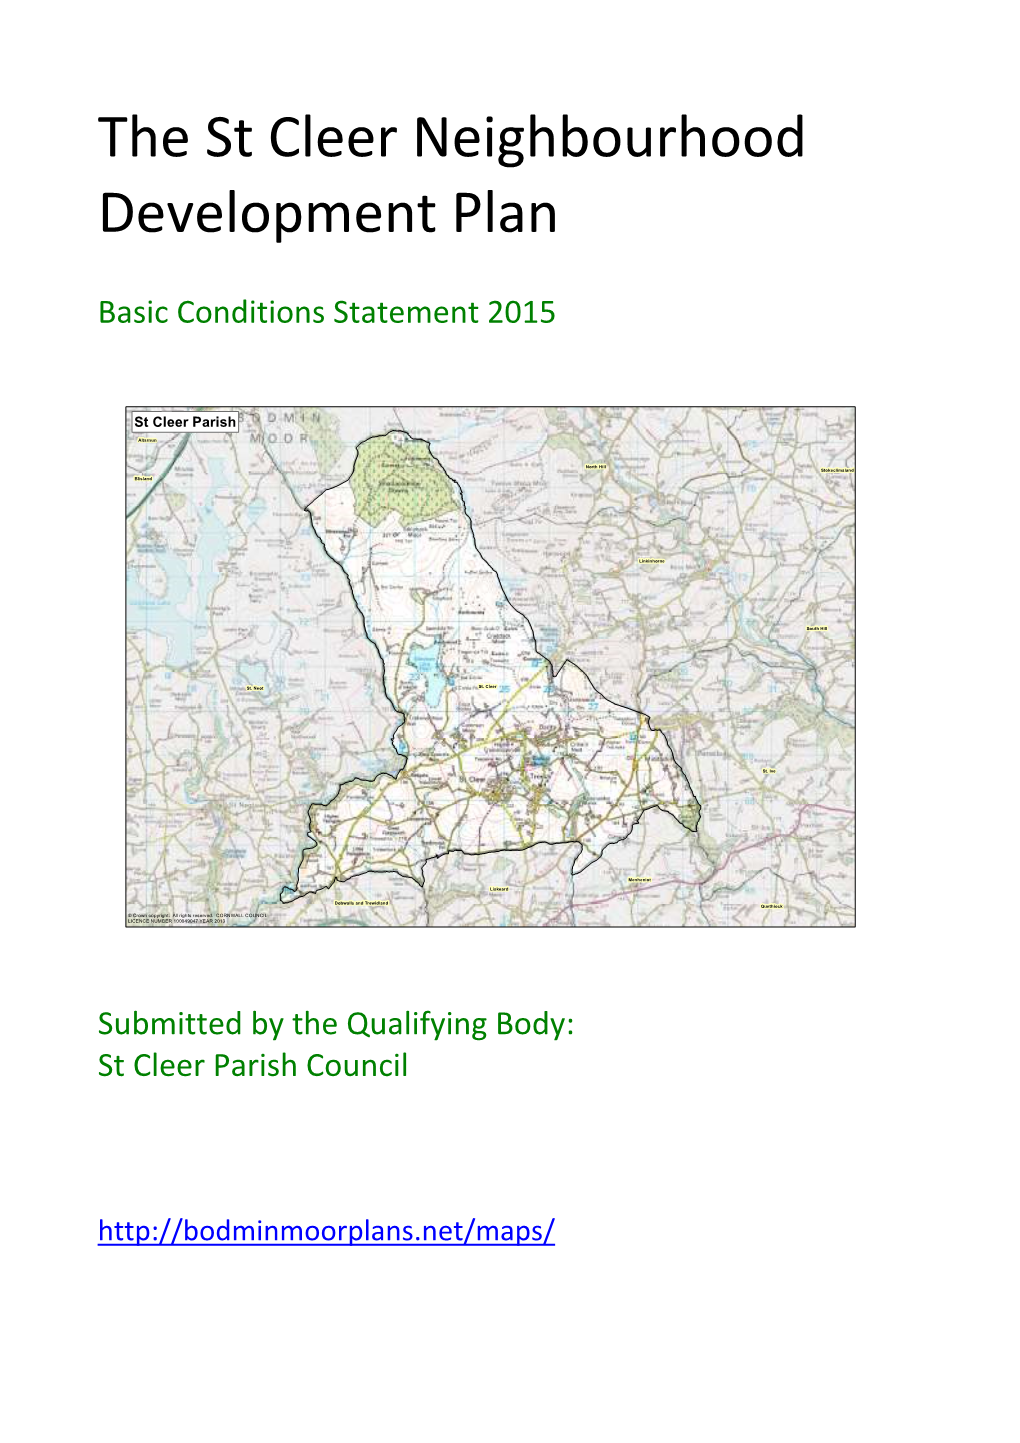 The St Cleer Neighbourhood Development Plan